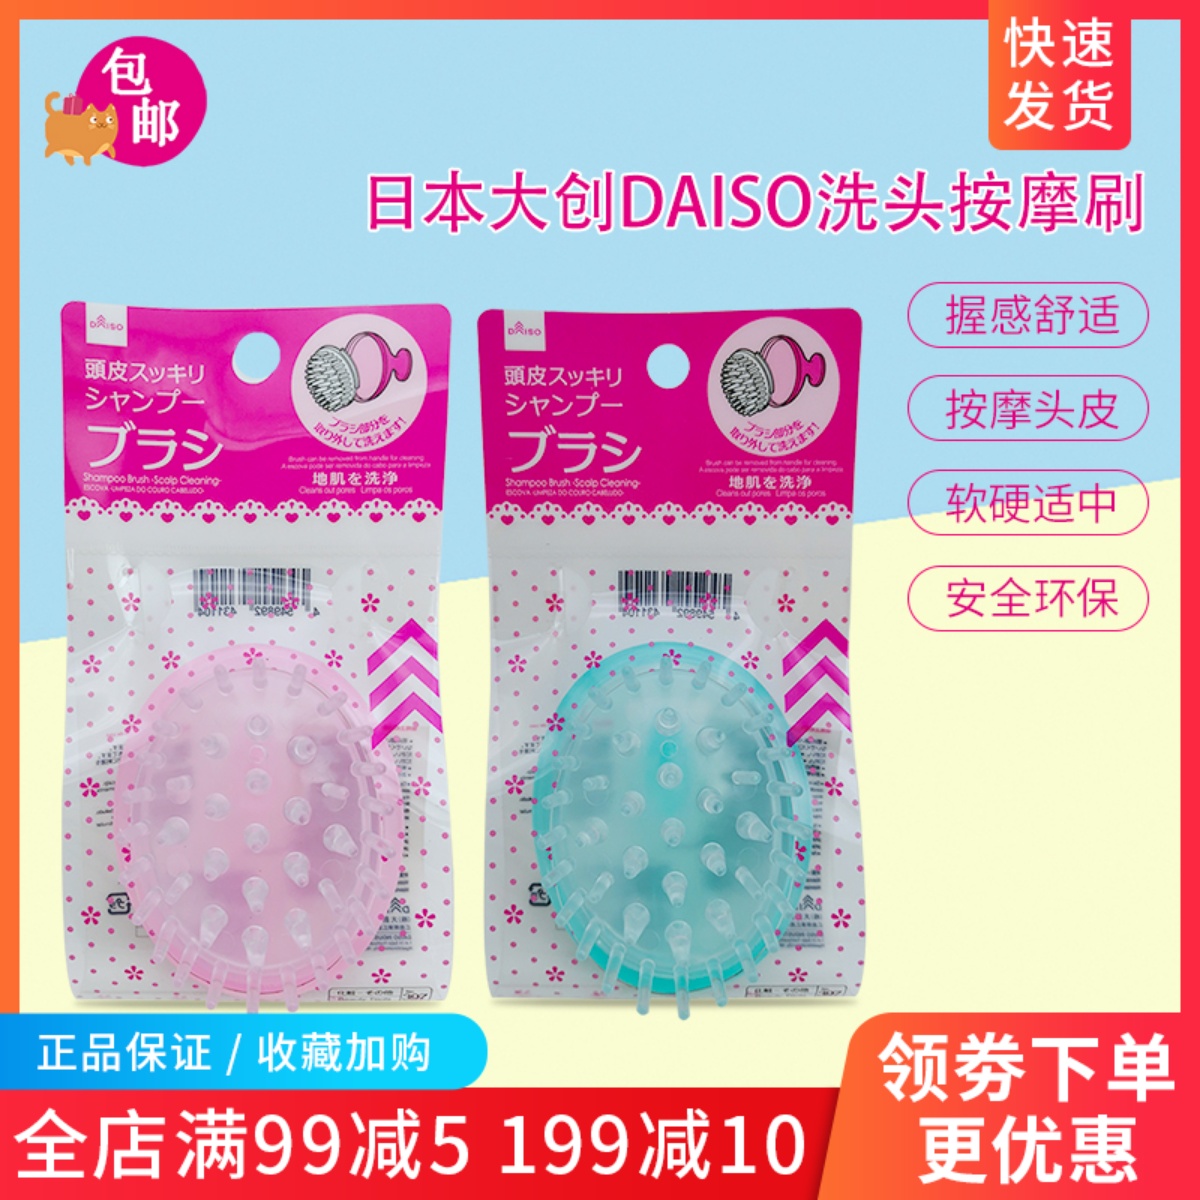 日本DAISO大创洗头刷按摩刷洗发梳洗发刷不伤头皮顺发护发抓头梳